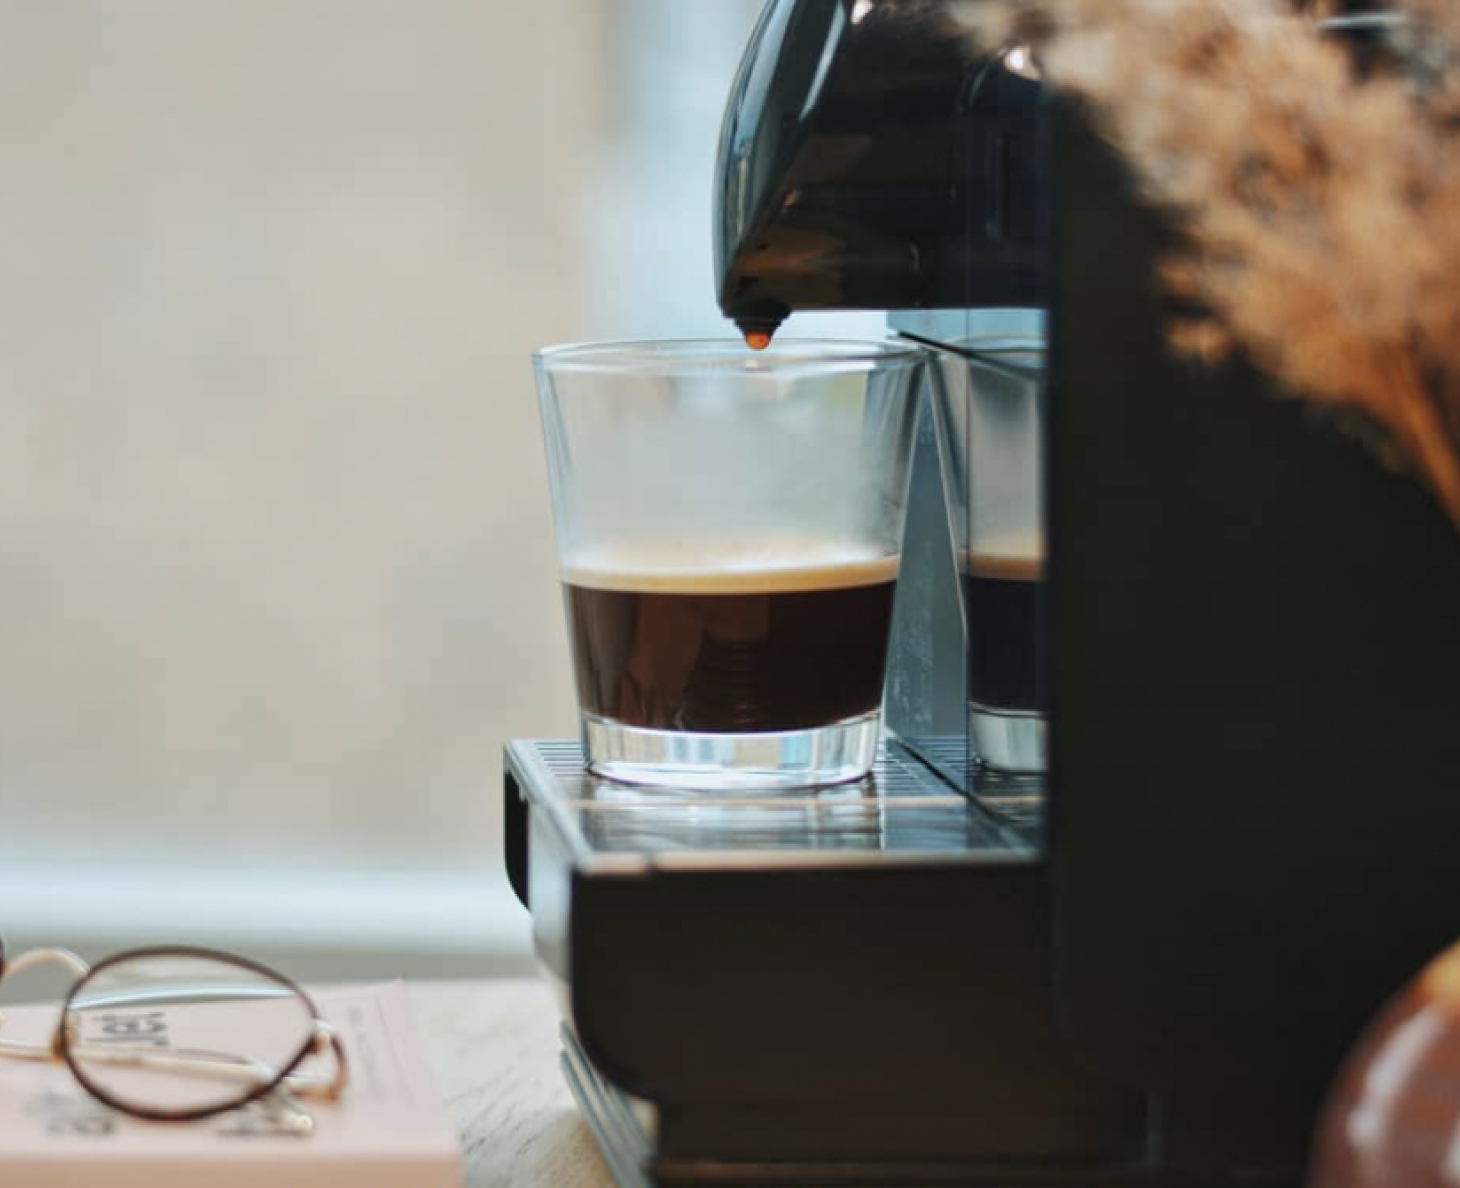 coffee machine and espresso